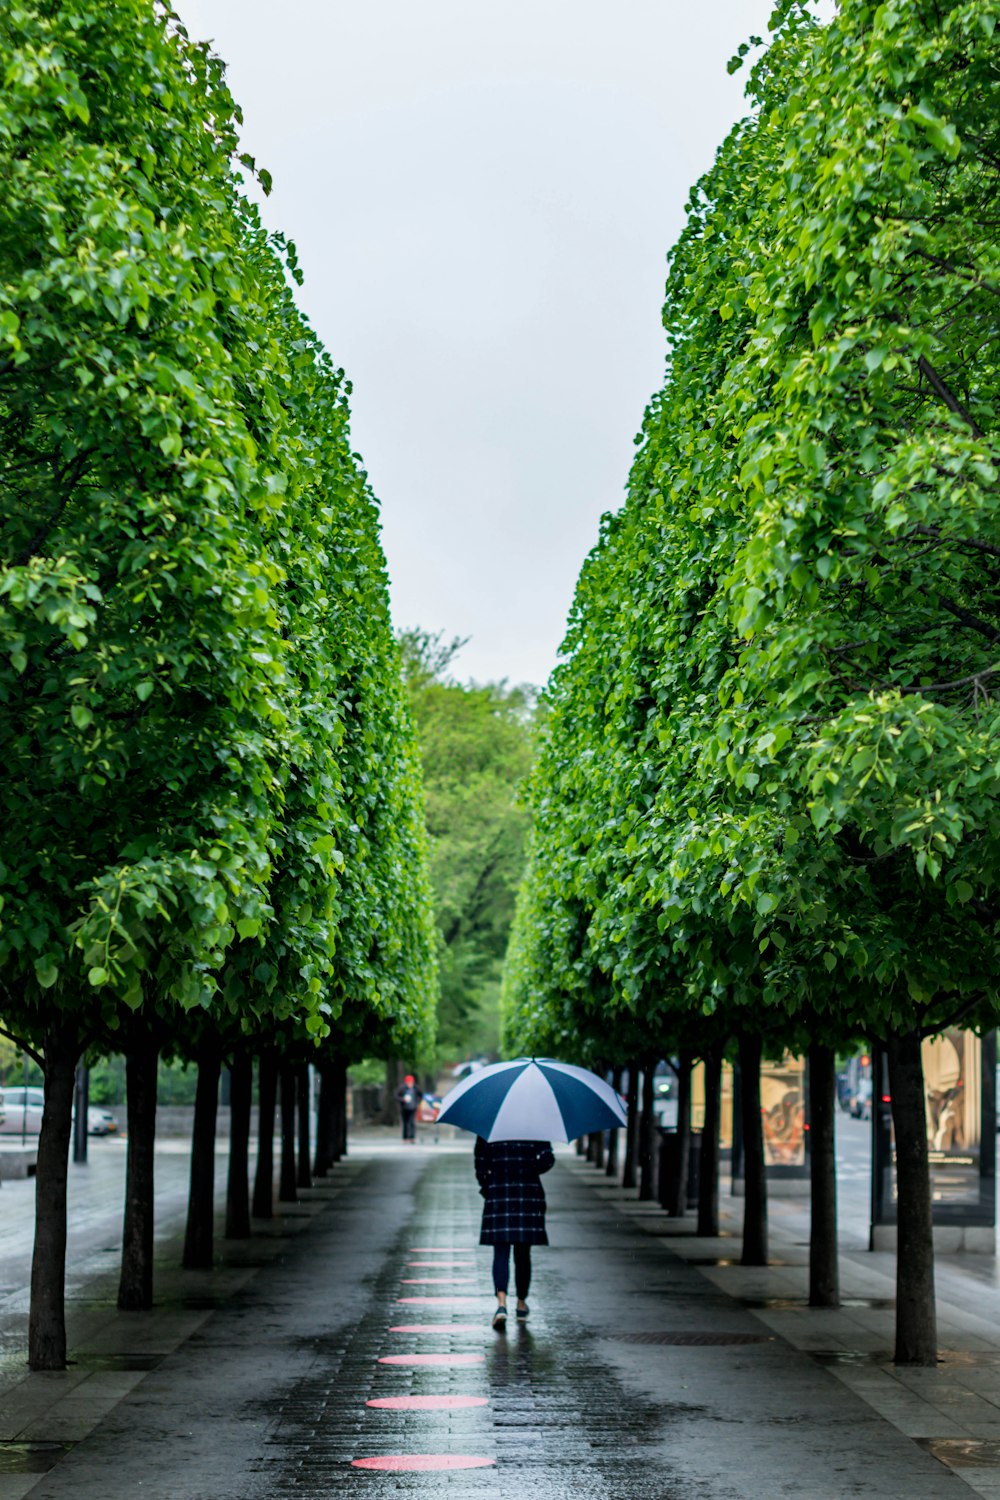 persone che camminano sul sentiero tra alberi verdi durante il giorno